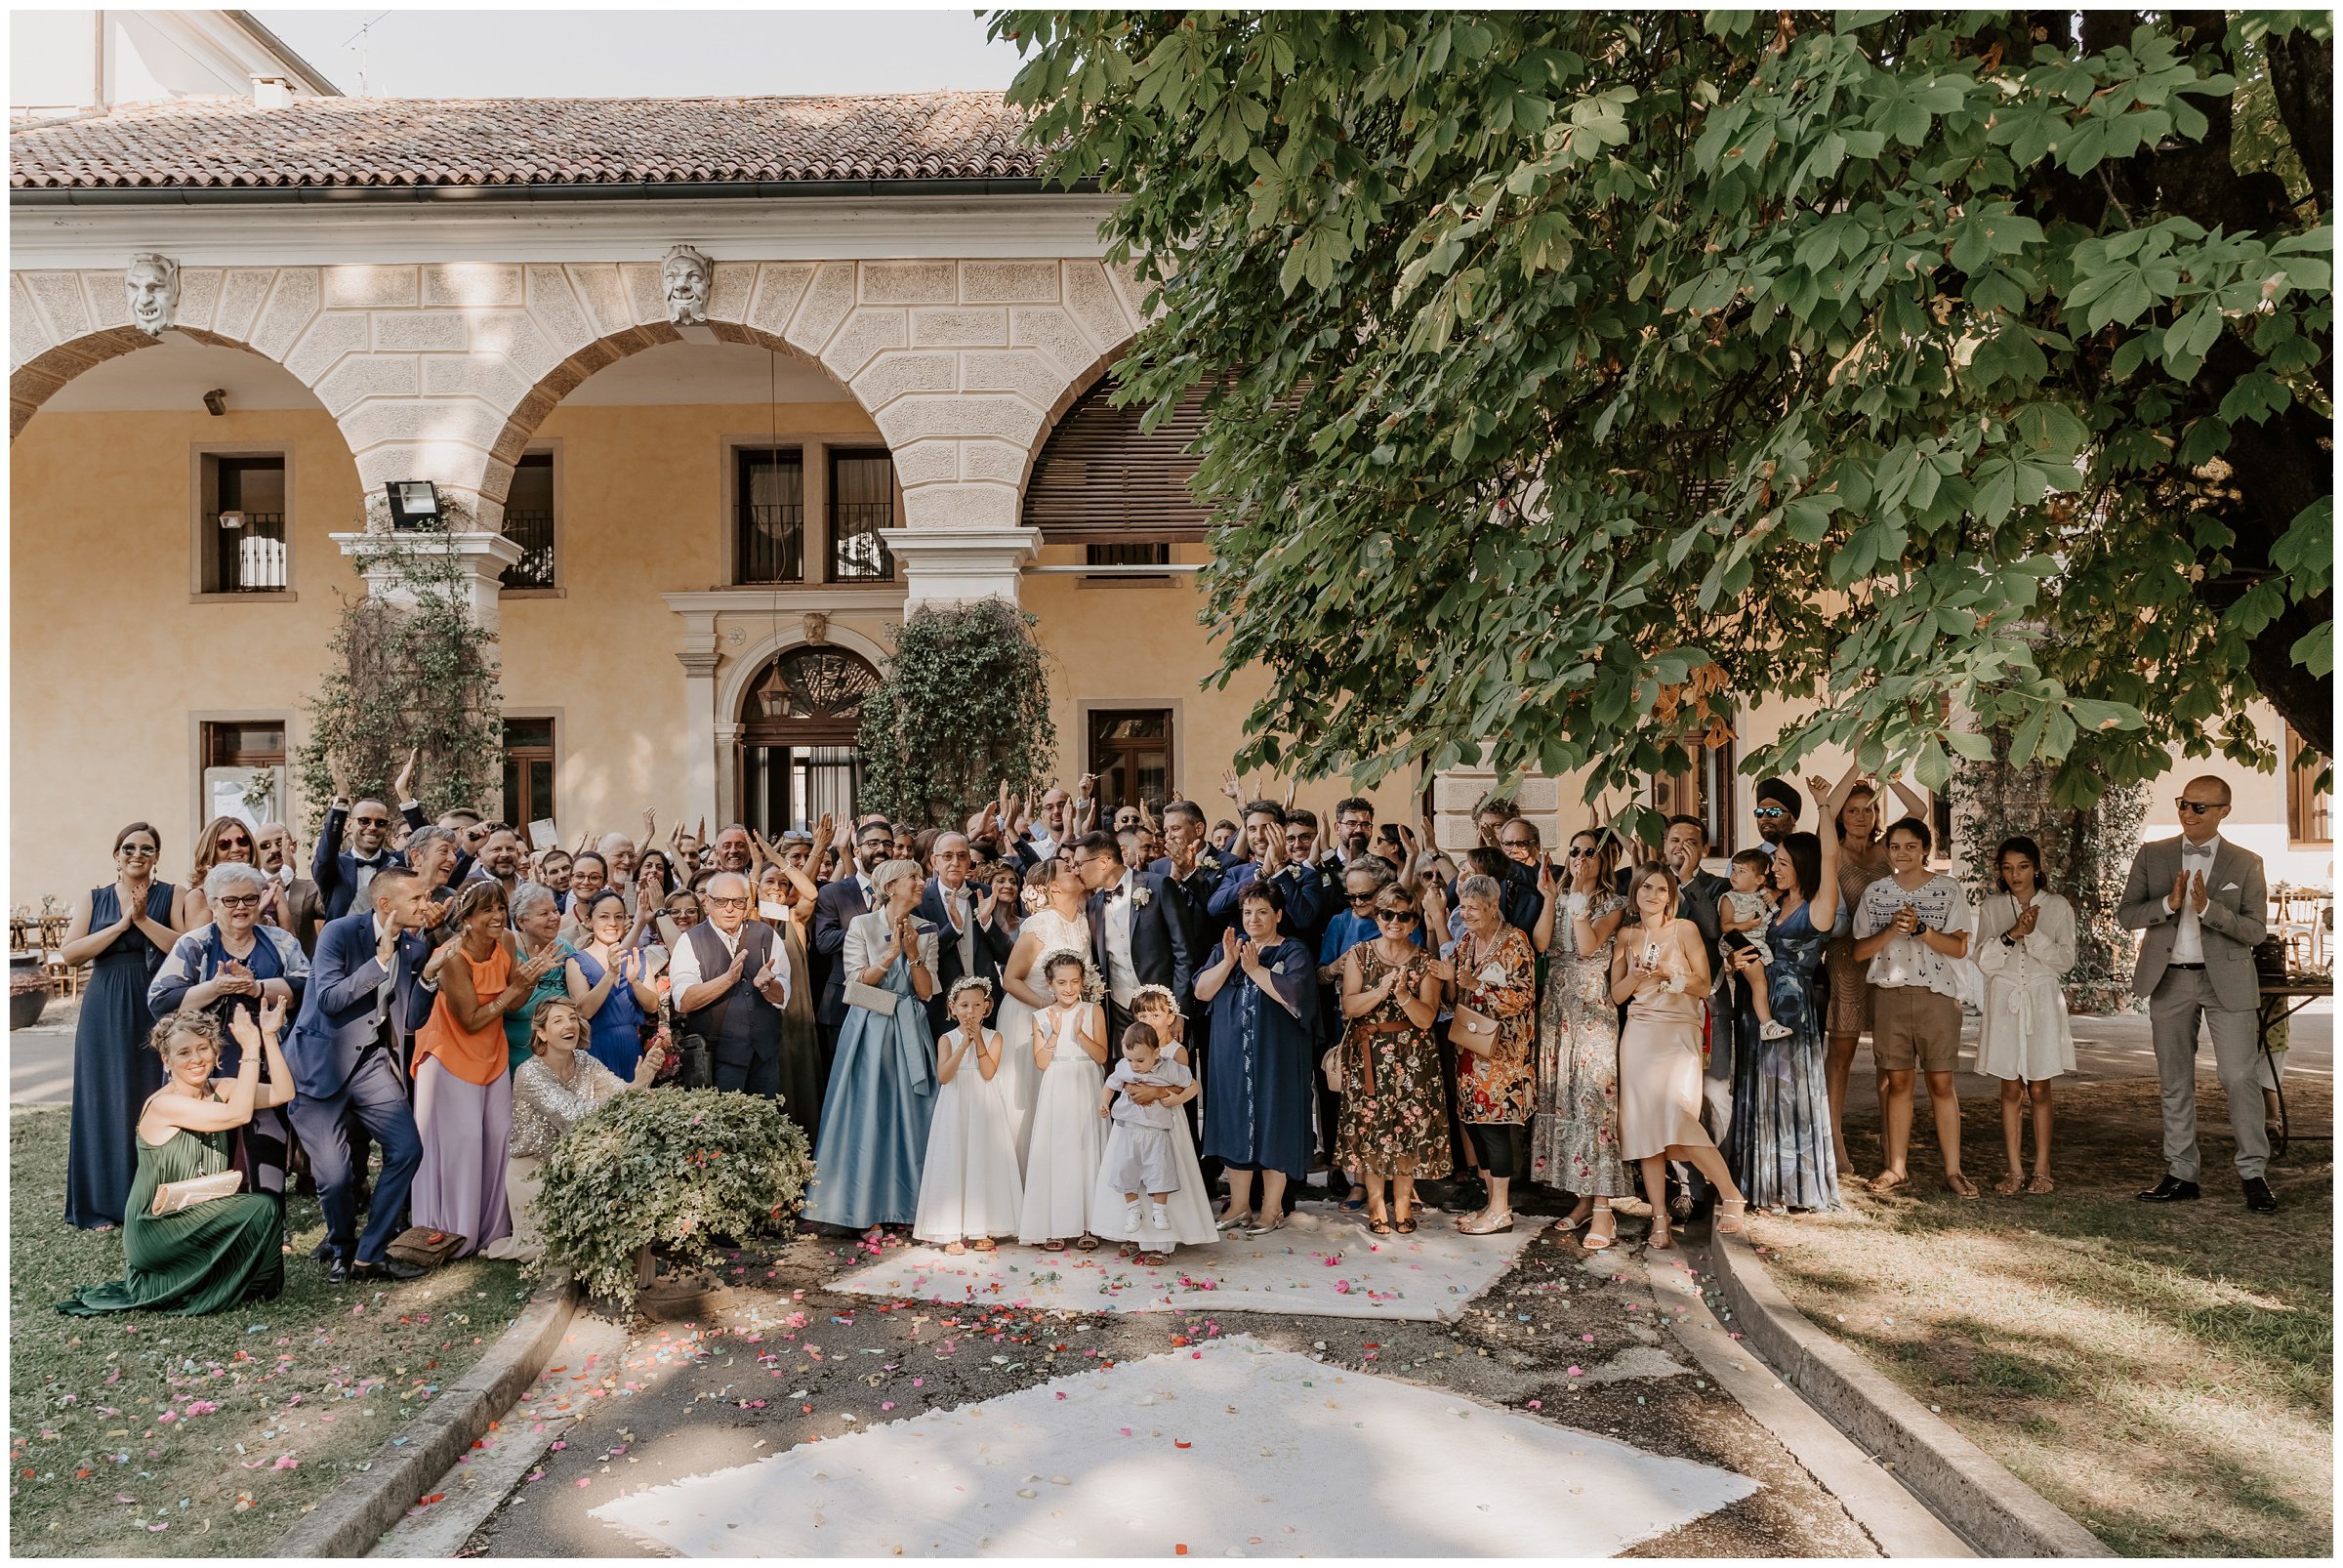 Matrimonio-villa-foscarini-cornaro-fotografo-matrimonio-treviso-fotografo-matrimonio-venezia-36.jpg